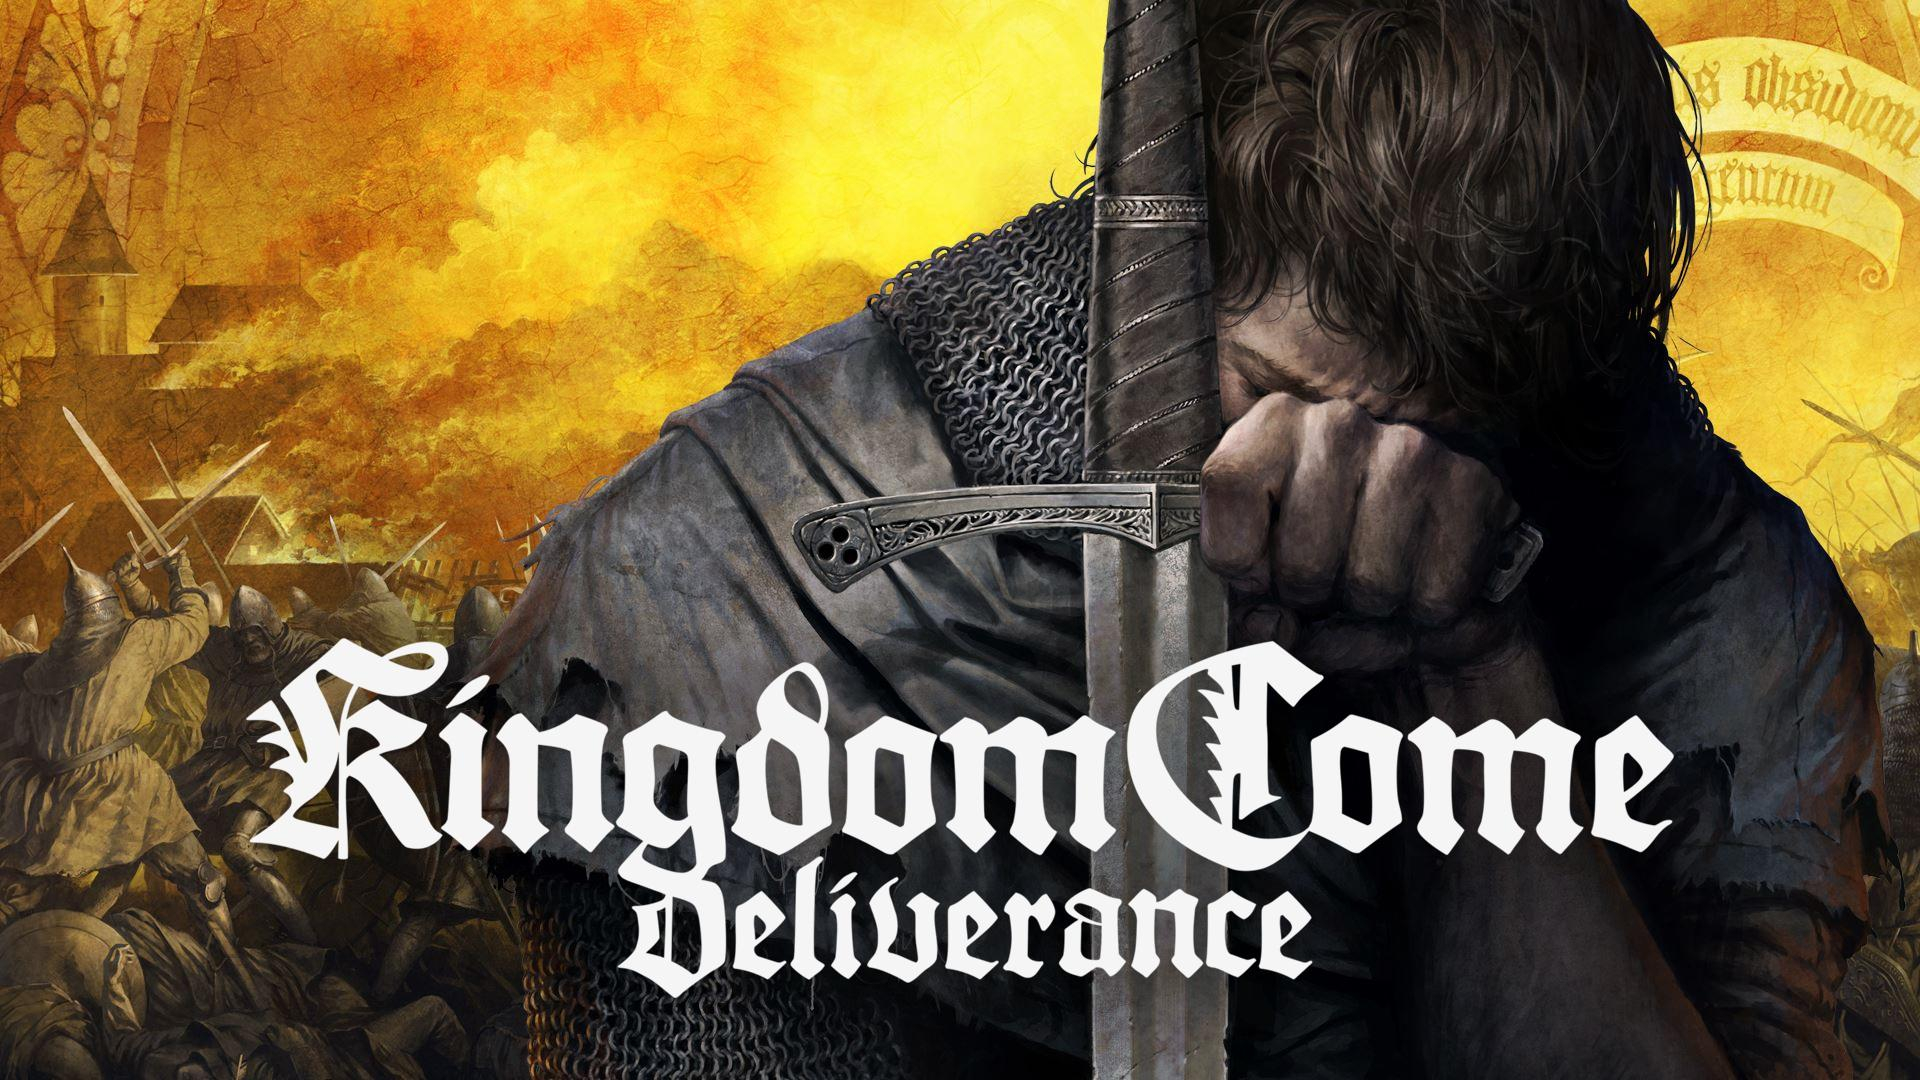 Новость В Steam скидка 70% на ролевую игру Kingdom Come: Deliverance